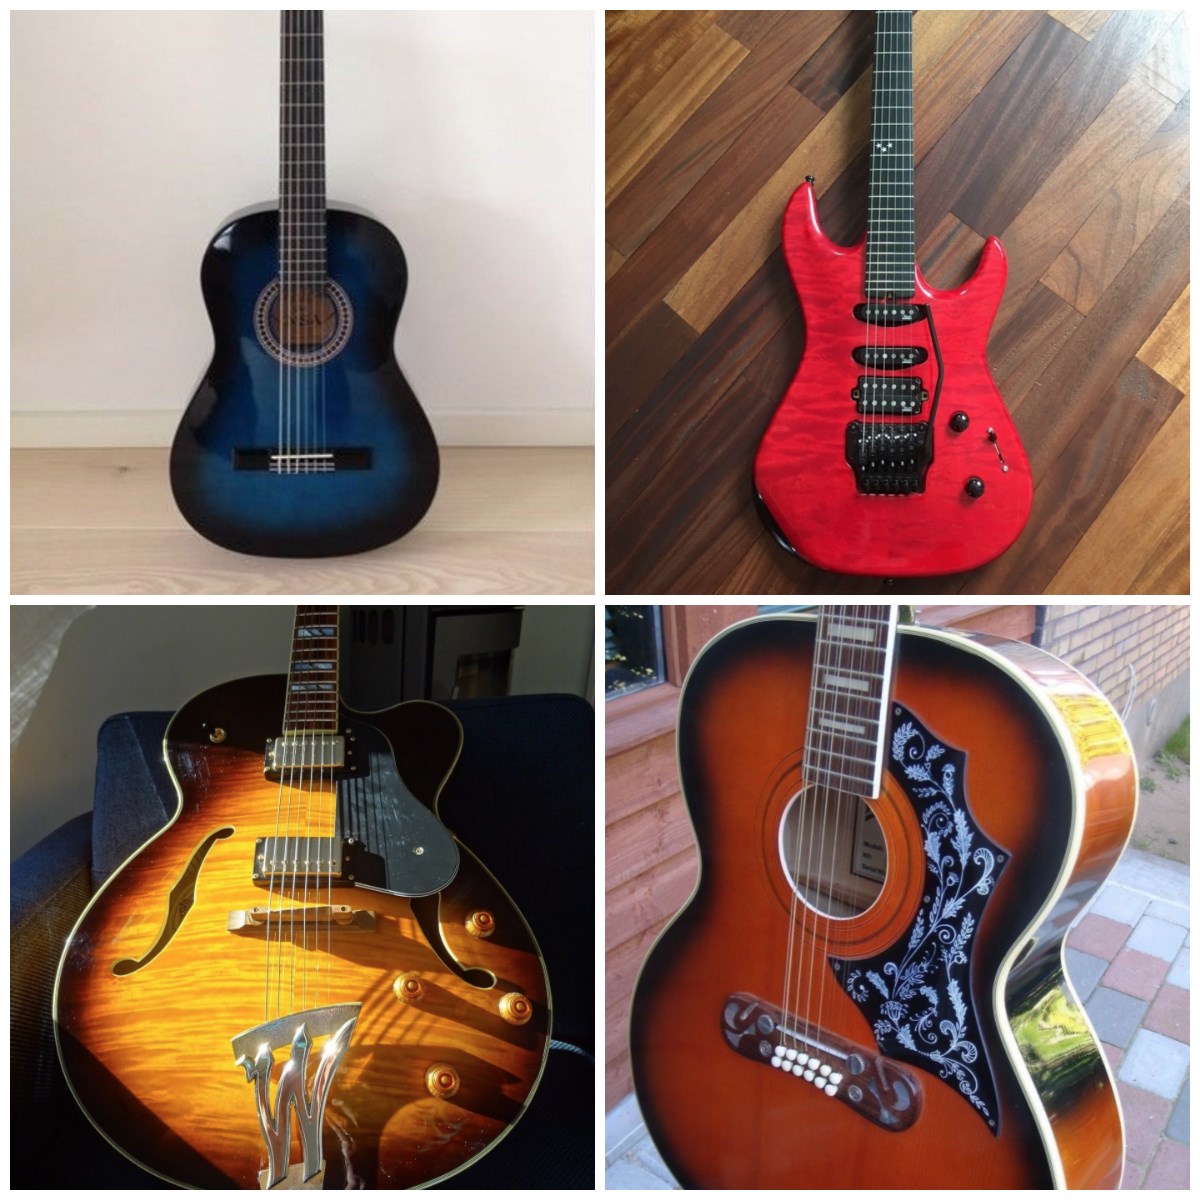 Her er fire billeder af guitarer, som alle er til salg - i skrivende stund - på DBA. Den mørkeblå er en akustisk guitar, som sælger vil have 375 kroner for, den røde elguitar koster 18.000 kroner på DBA, jazzguitaren i venstre hjørne er til salg for 3.000 kroner på DBA, mens du skal punge ud med 2.500 kroner for at få fat i den halvakustiske guitar, som du finder på billedet nedersr til højre